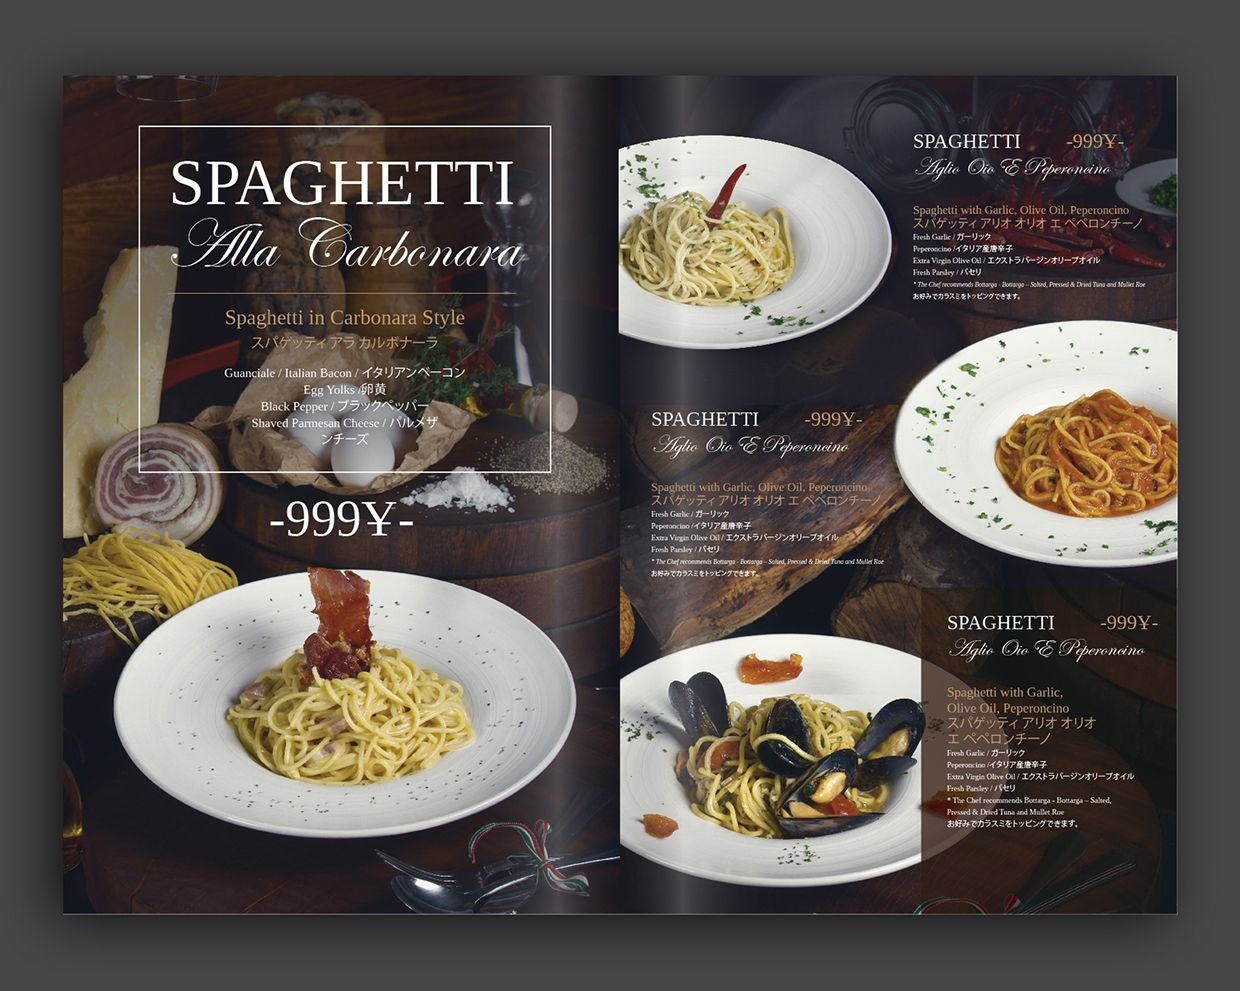 меню итальянской кухни в ресторане